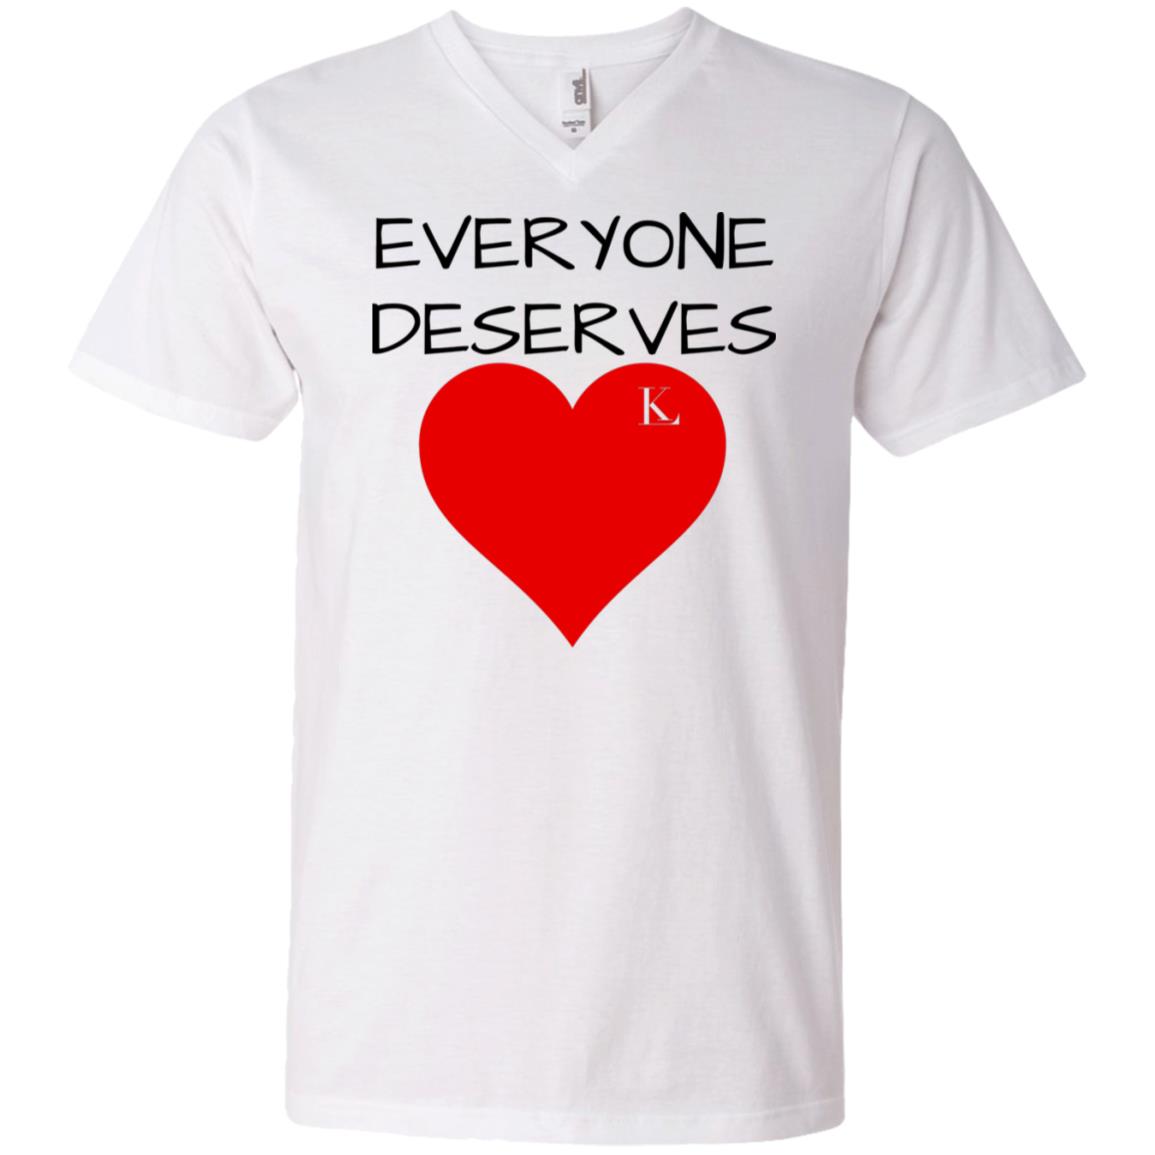 EVERYONE DESERVES LOVE Men's V-Neck T-Shirt